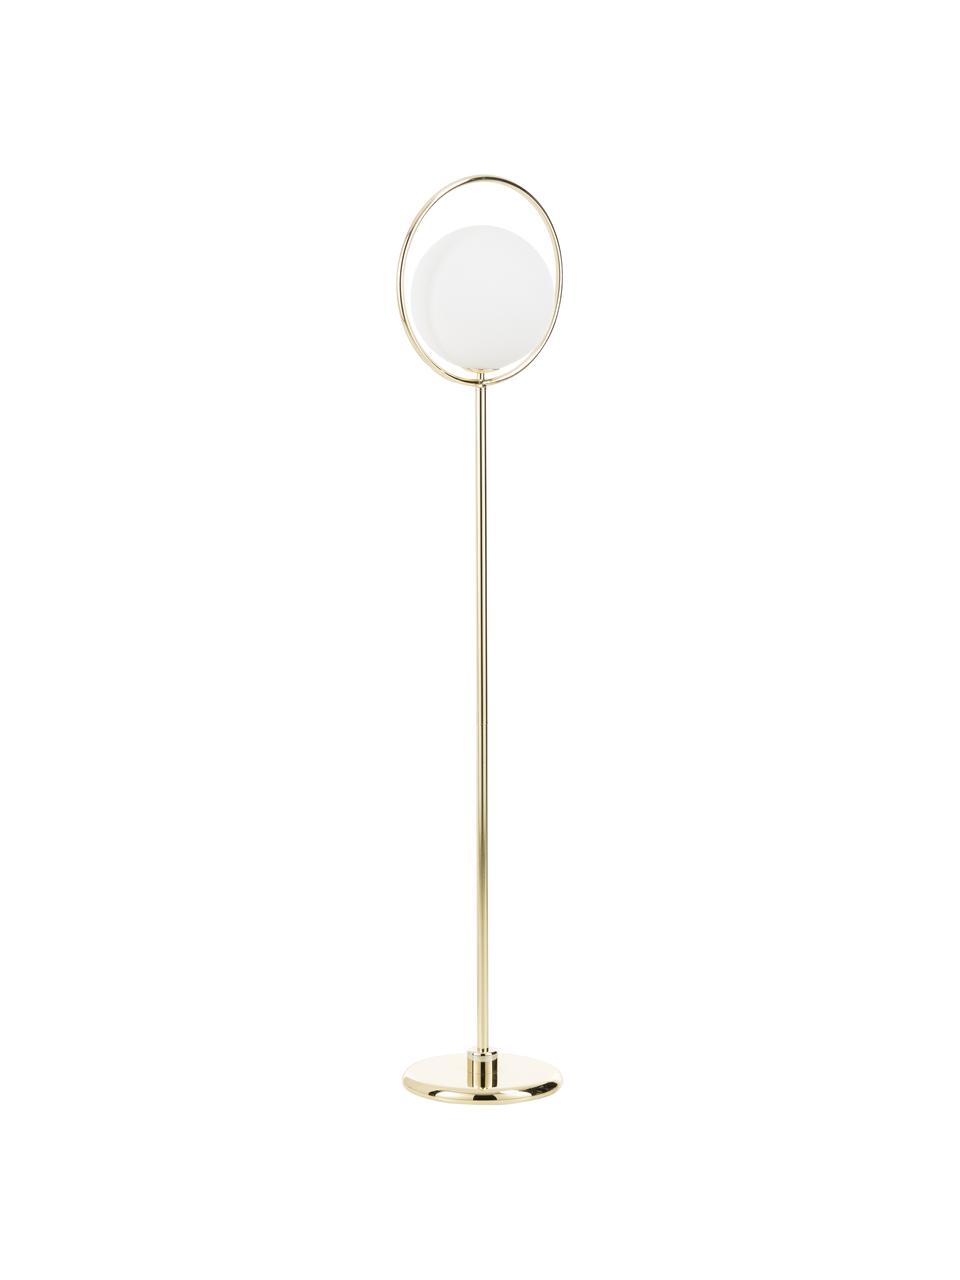 Design-Stehlampe Saint in Gold, Lampenschirm: Glas, Weiß, Messing, 30 x 140 cm